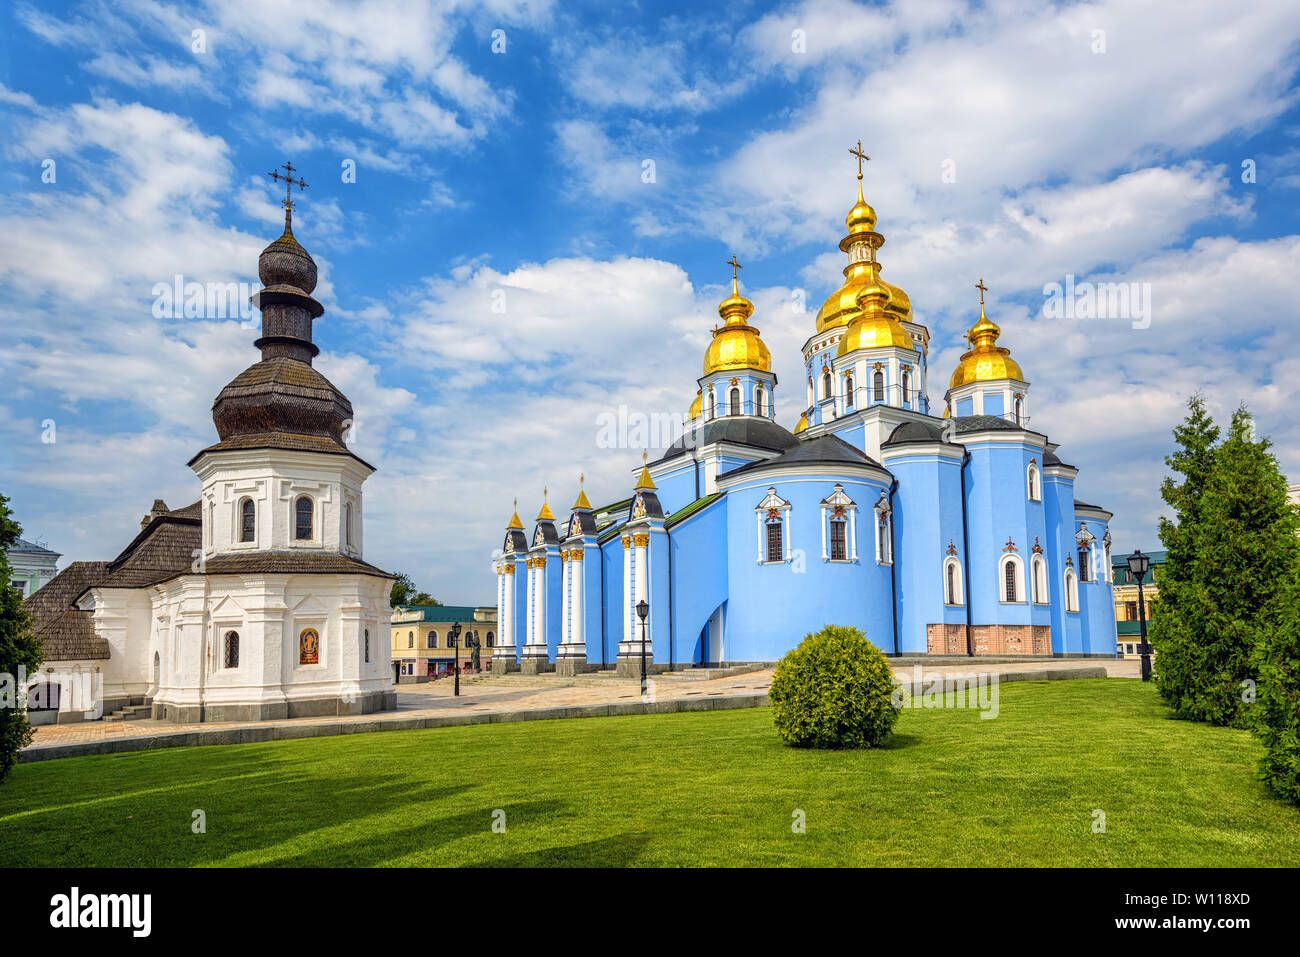 Kiew, Ukraine, christlich-orthodoxen St. Michael's Goldene Kuppel Kloster ist ein Wahrzeichen und ein Beispiel des ukrainischen Barock Stil Stockfoto